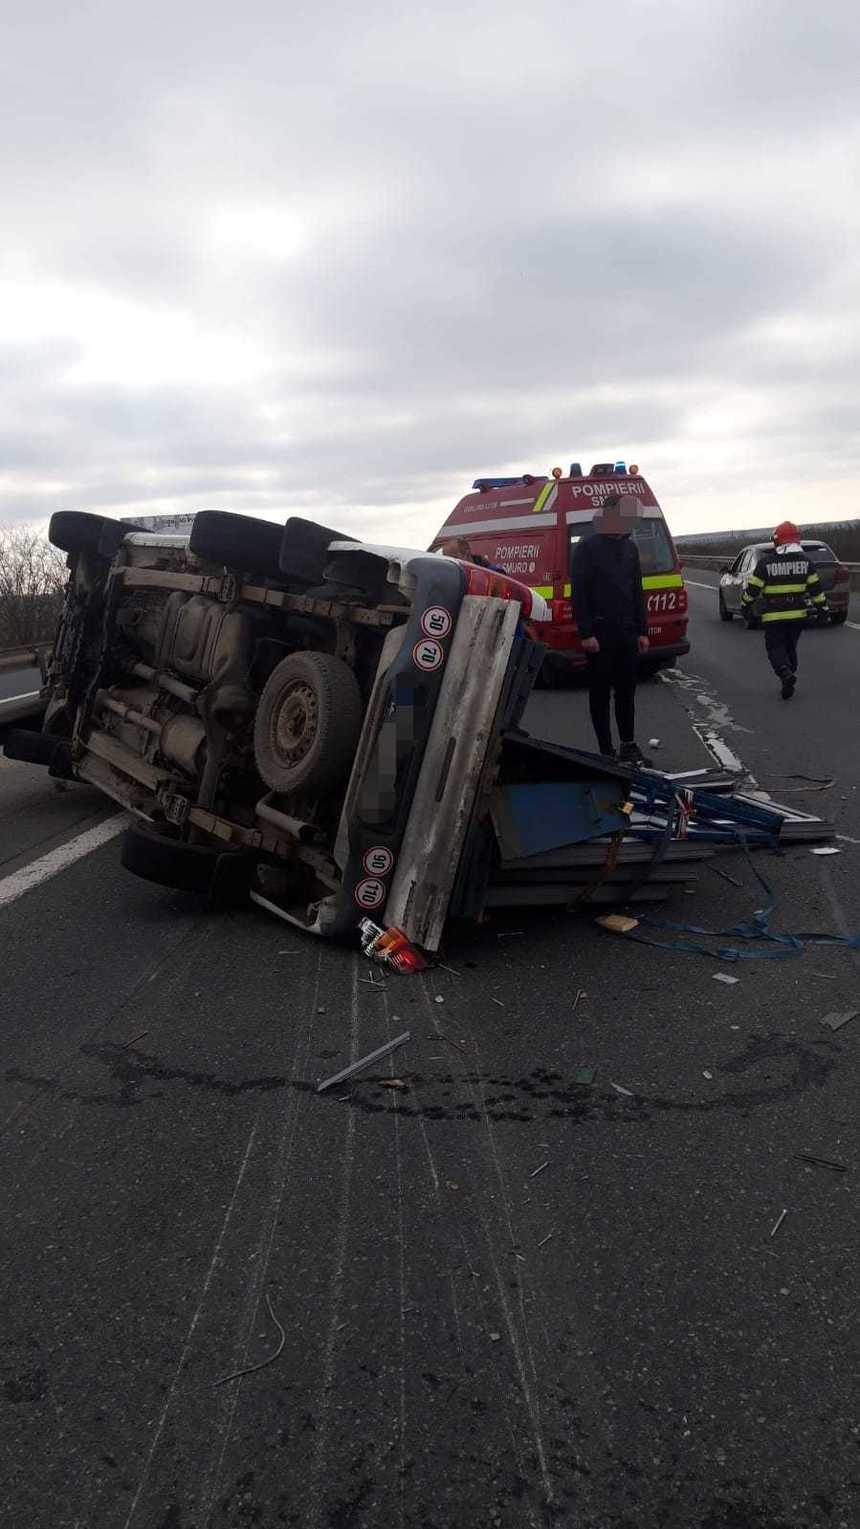 Trafic restricţionat pe autostrada A1, unde o autoutilitară s-a răsturnat pe carosabil / Două persoane au fost rănite